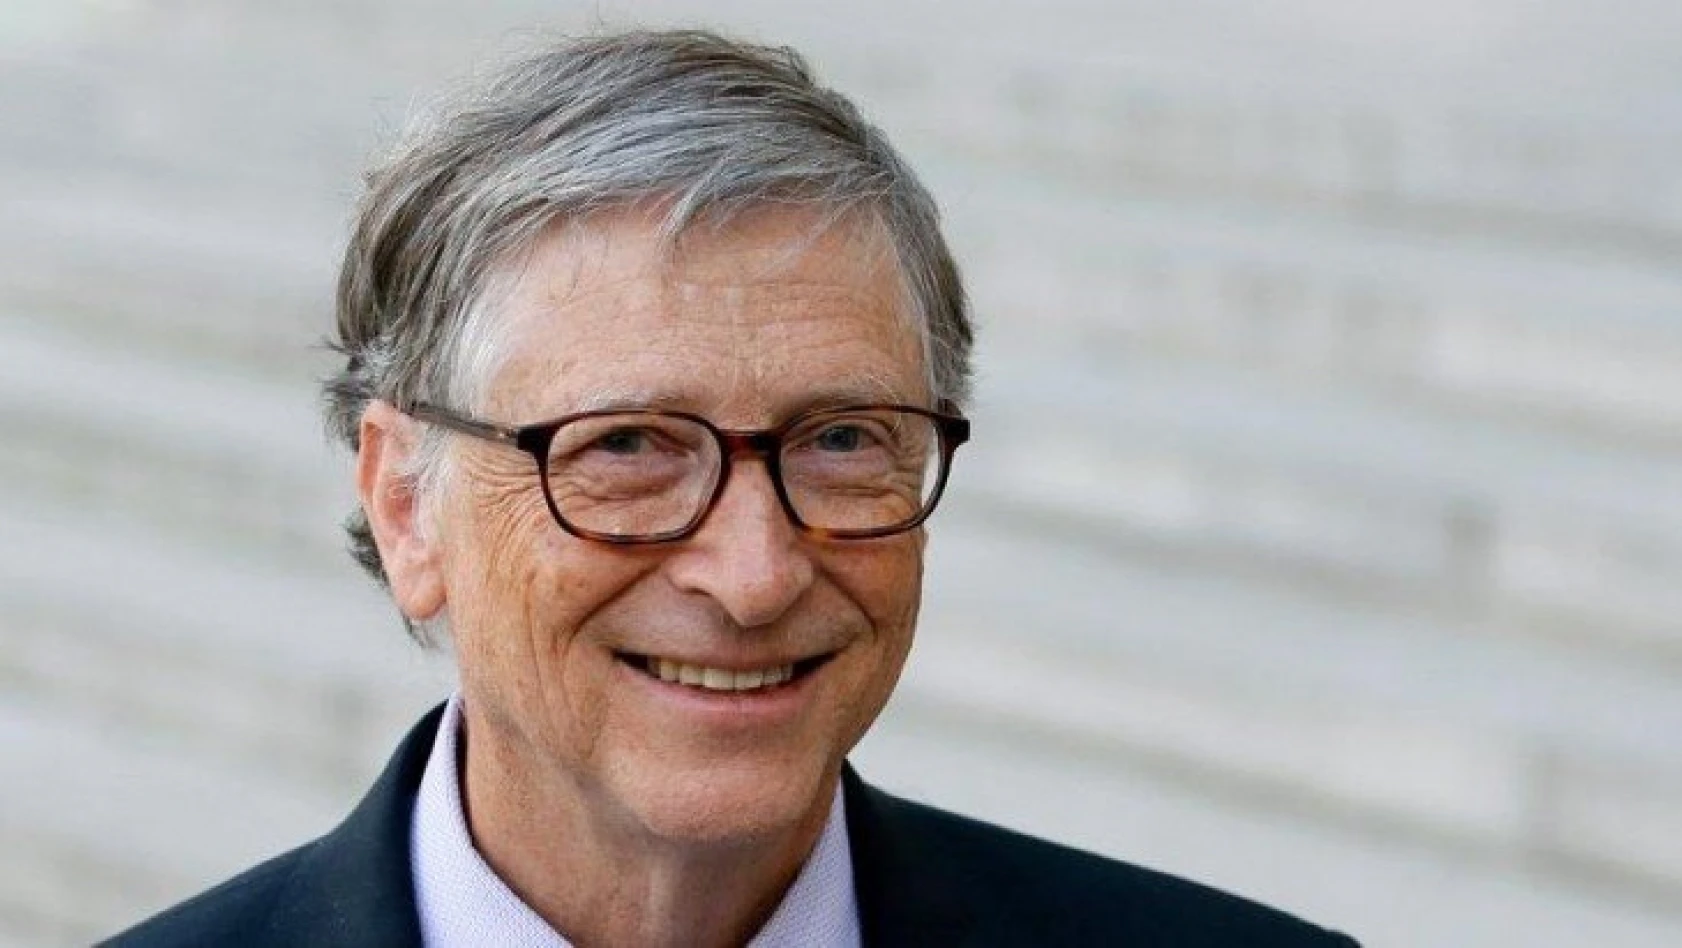 Bill Gates müjdeyi verdi! 6 korona virüsü aşısı…